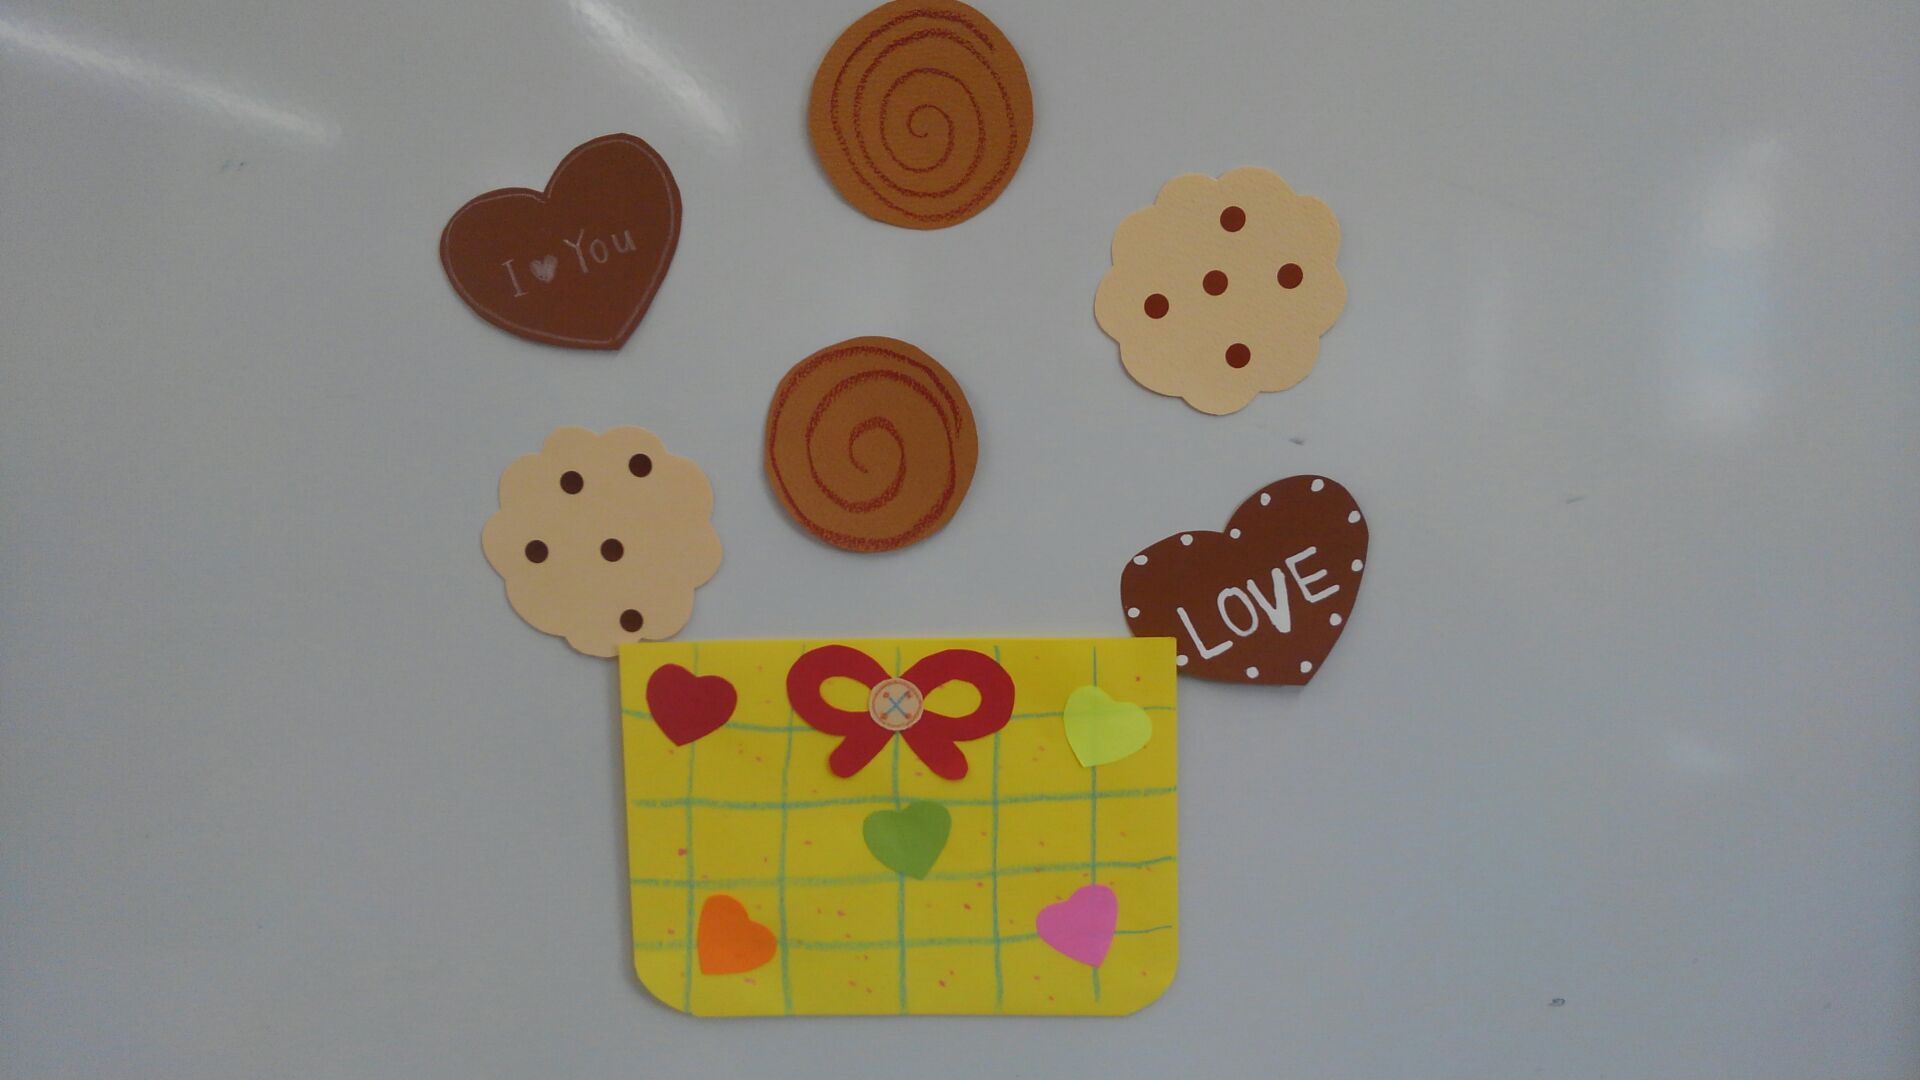 クッキーのシール。ハート型のクッキーには「LOVE」や「I ♡ You」の文字が書かれています。